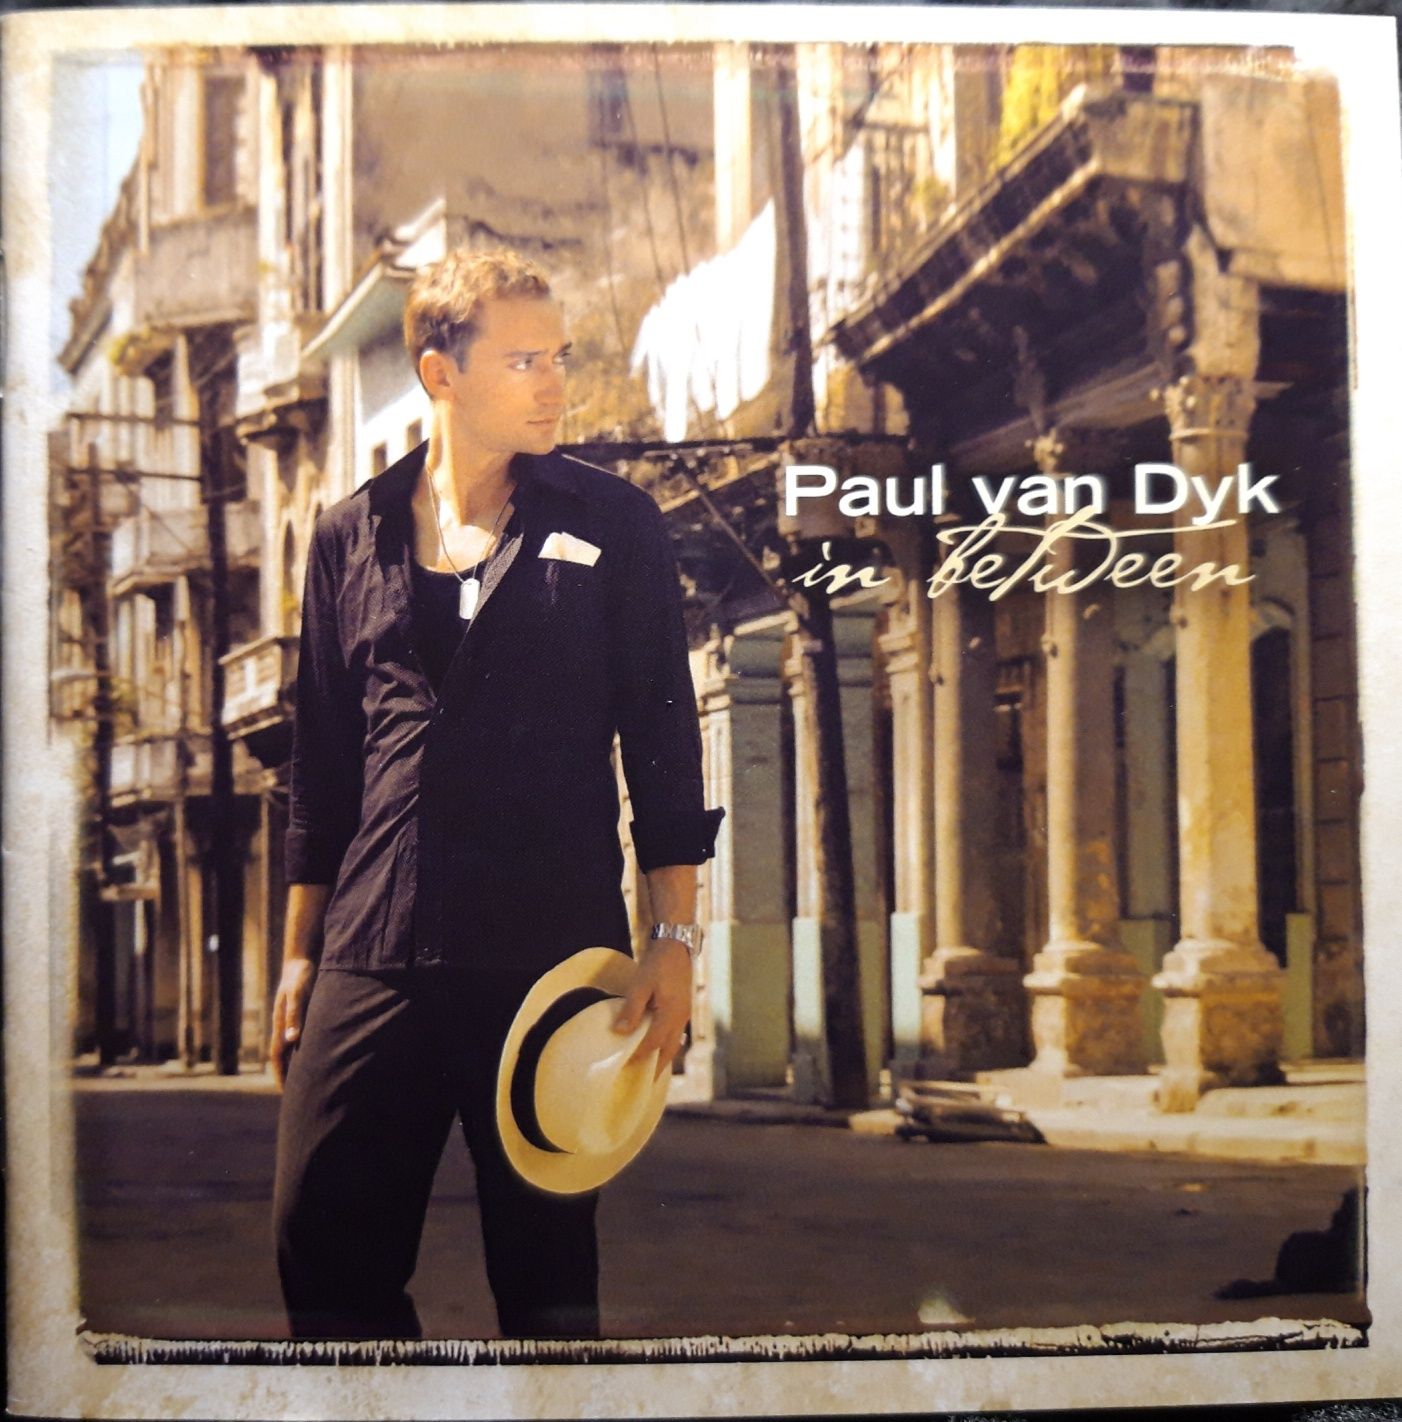 Paul van Dyk – In Between (CD, 2007)